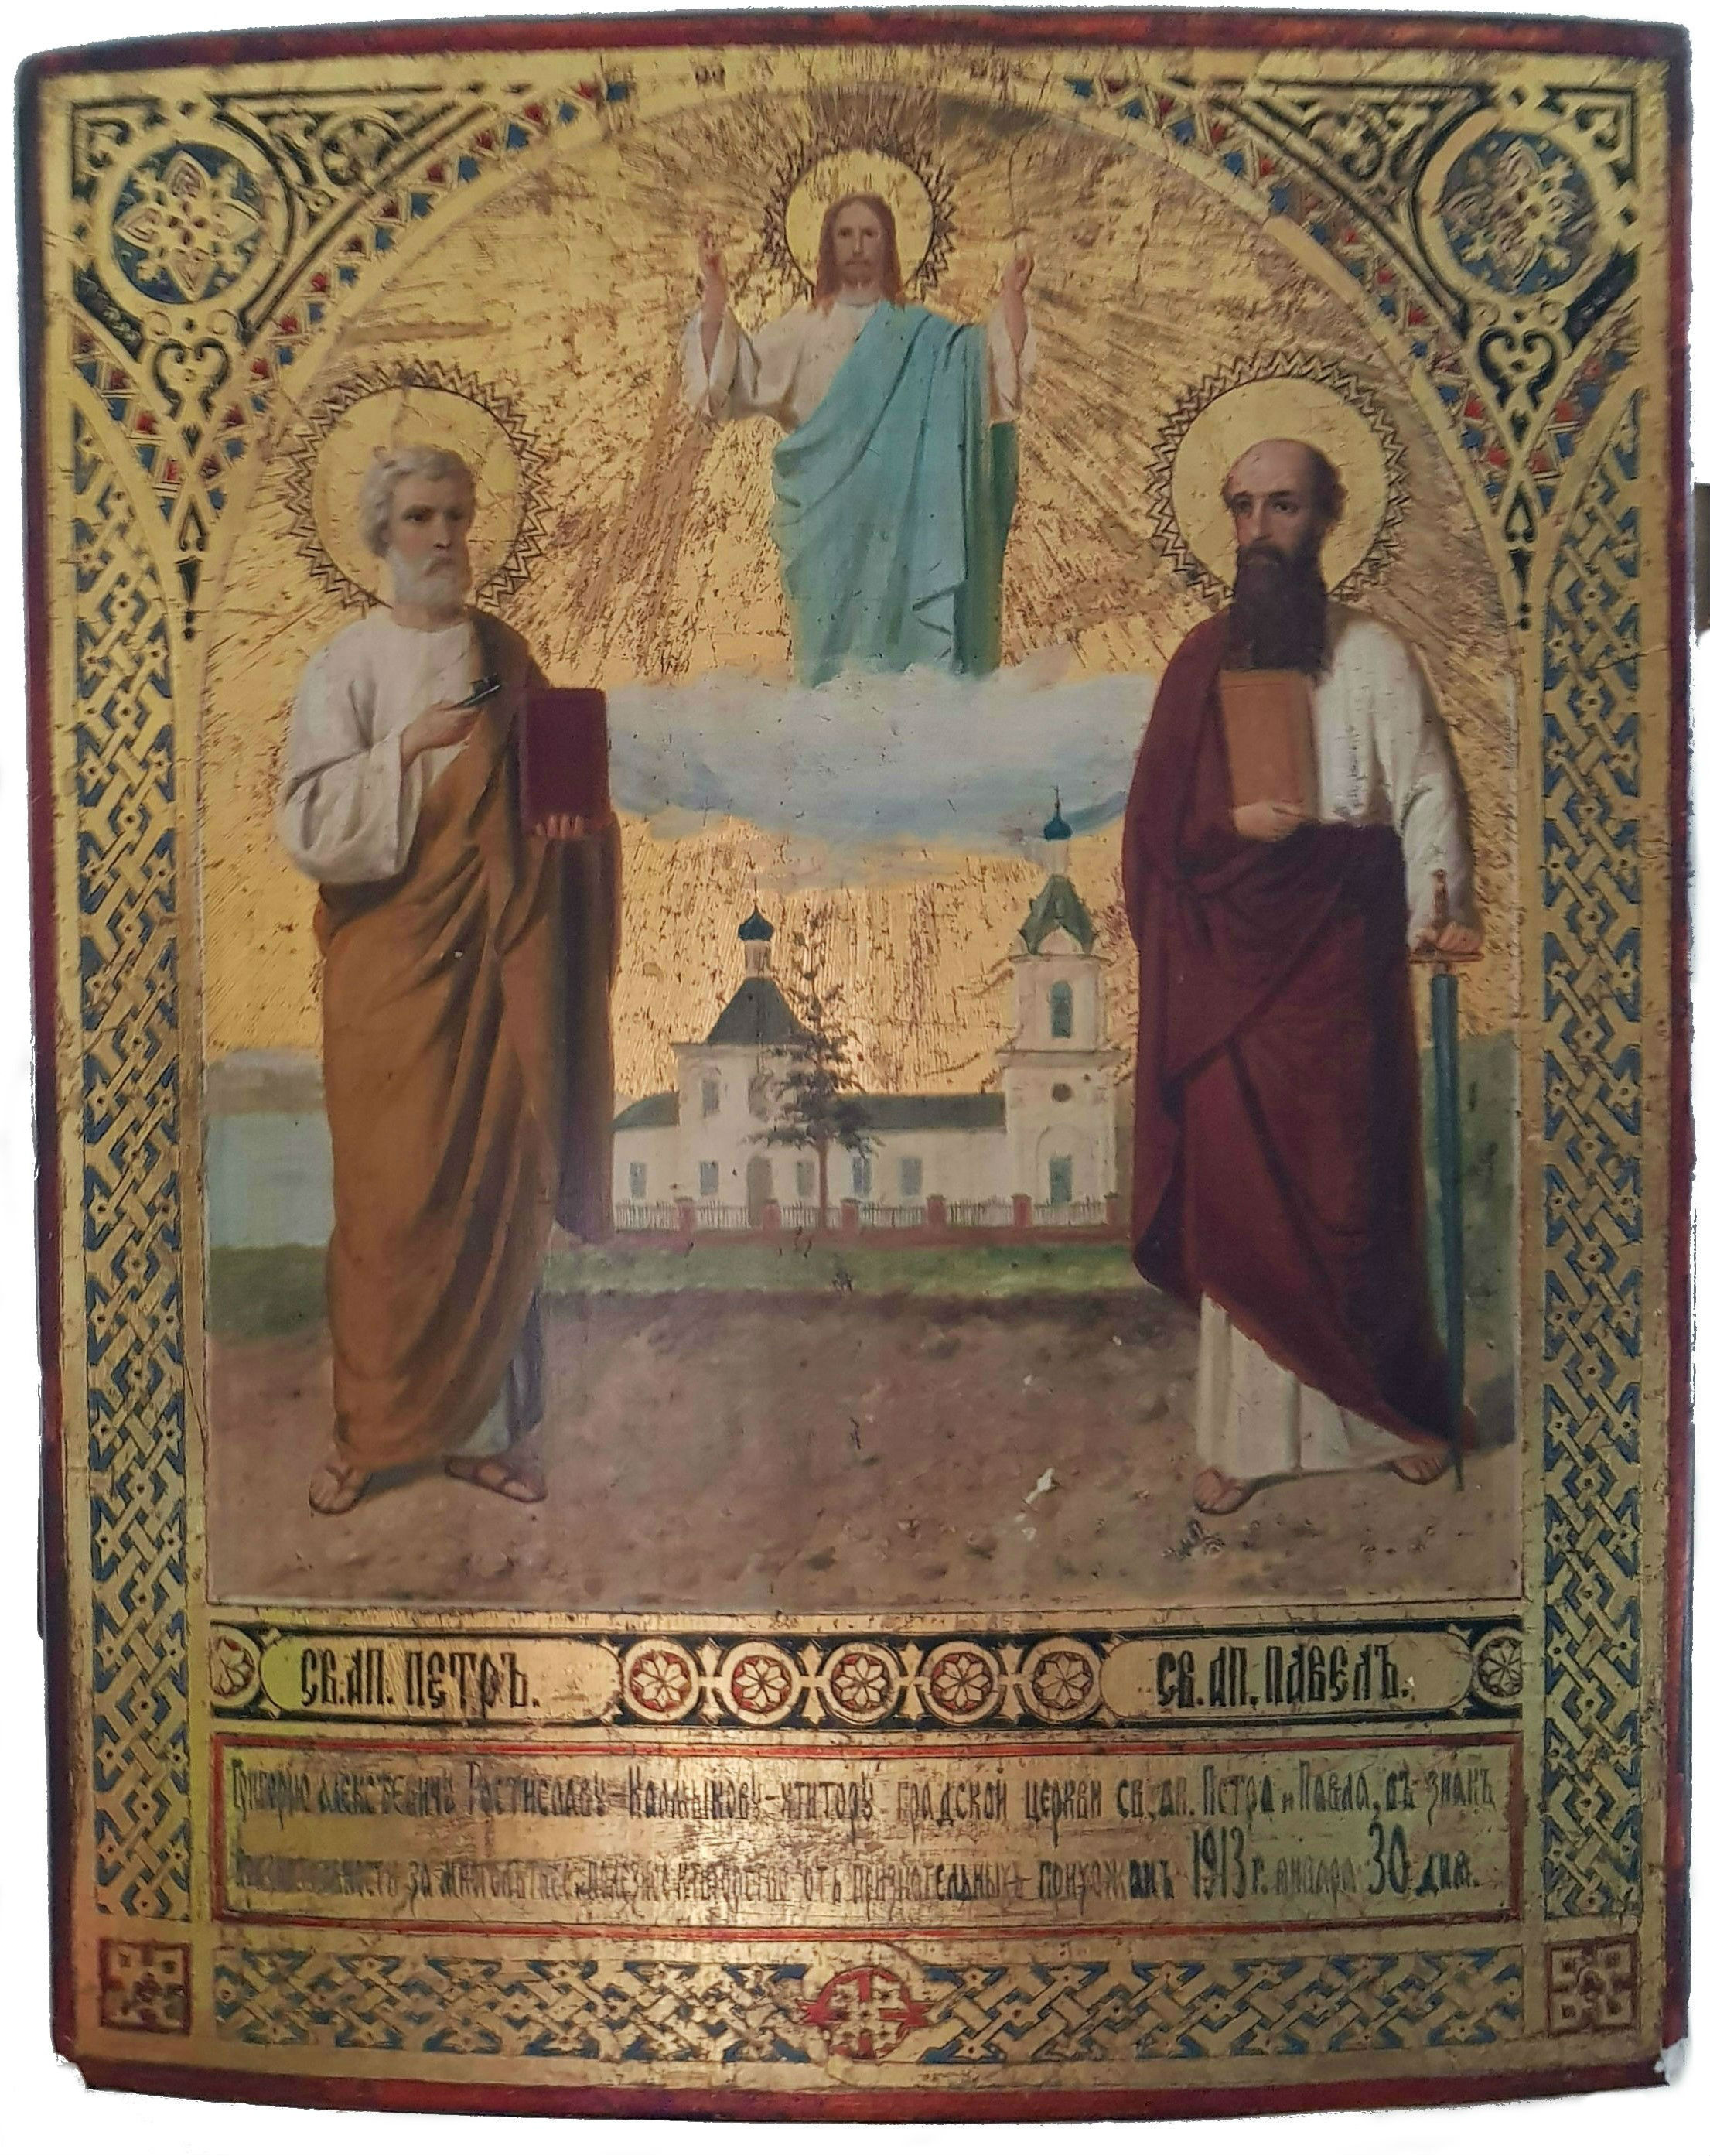 Икона "Святые апостолы Петр и Павел", около 1913 года, Симбирск. (Коллекция автора)